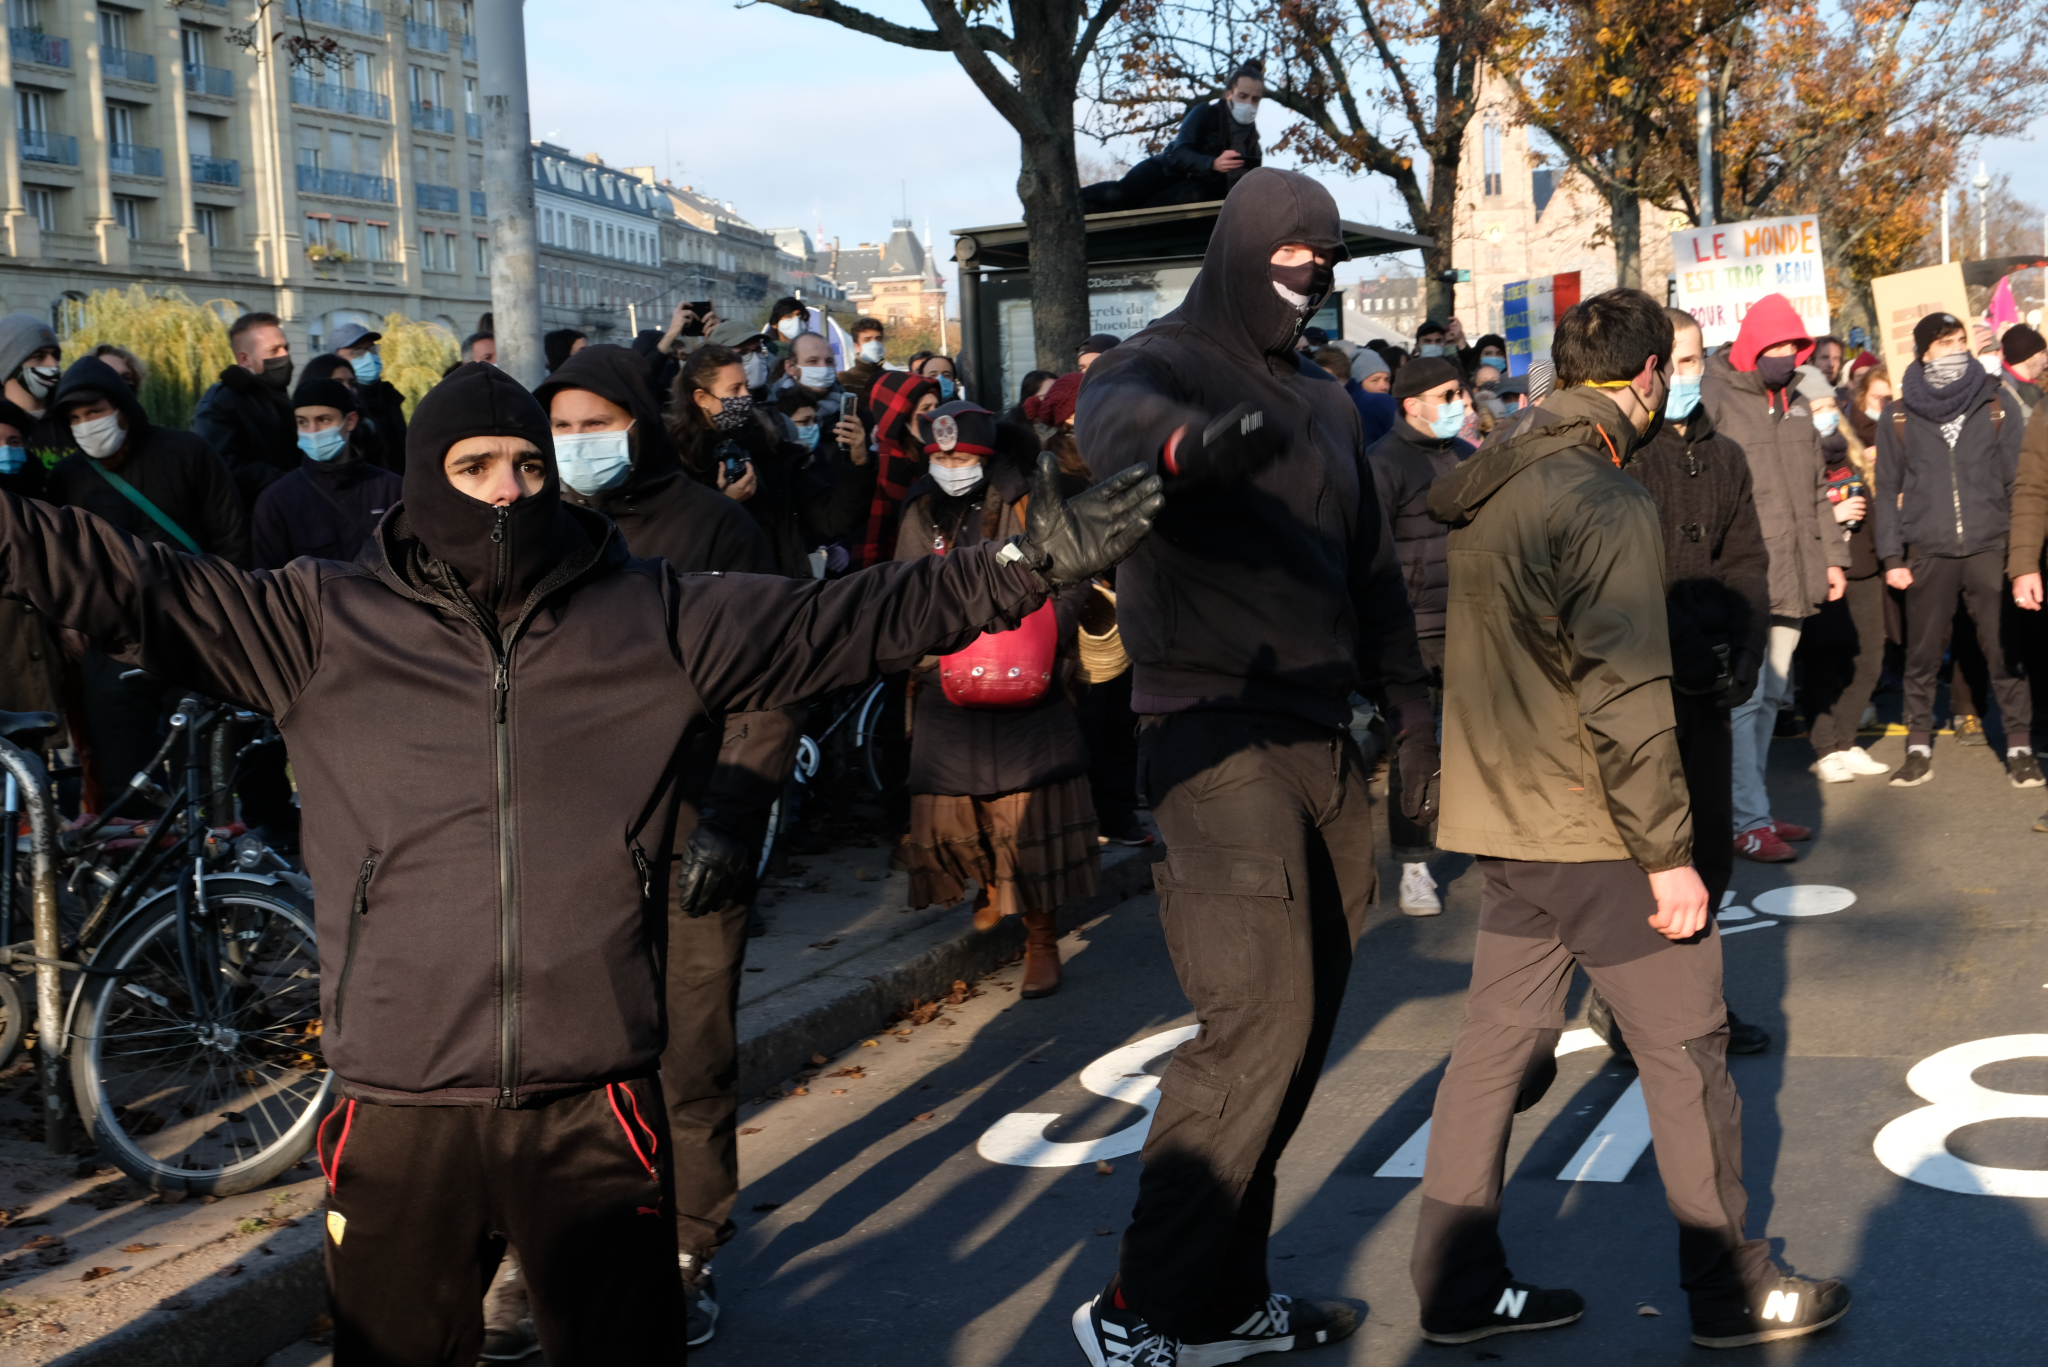 À Reims, les hooligans de Strasbourg Offender nullement empêchés d’en découdre malgré un arrêté préfectoral